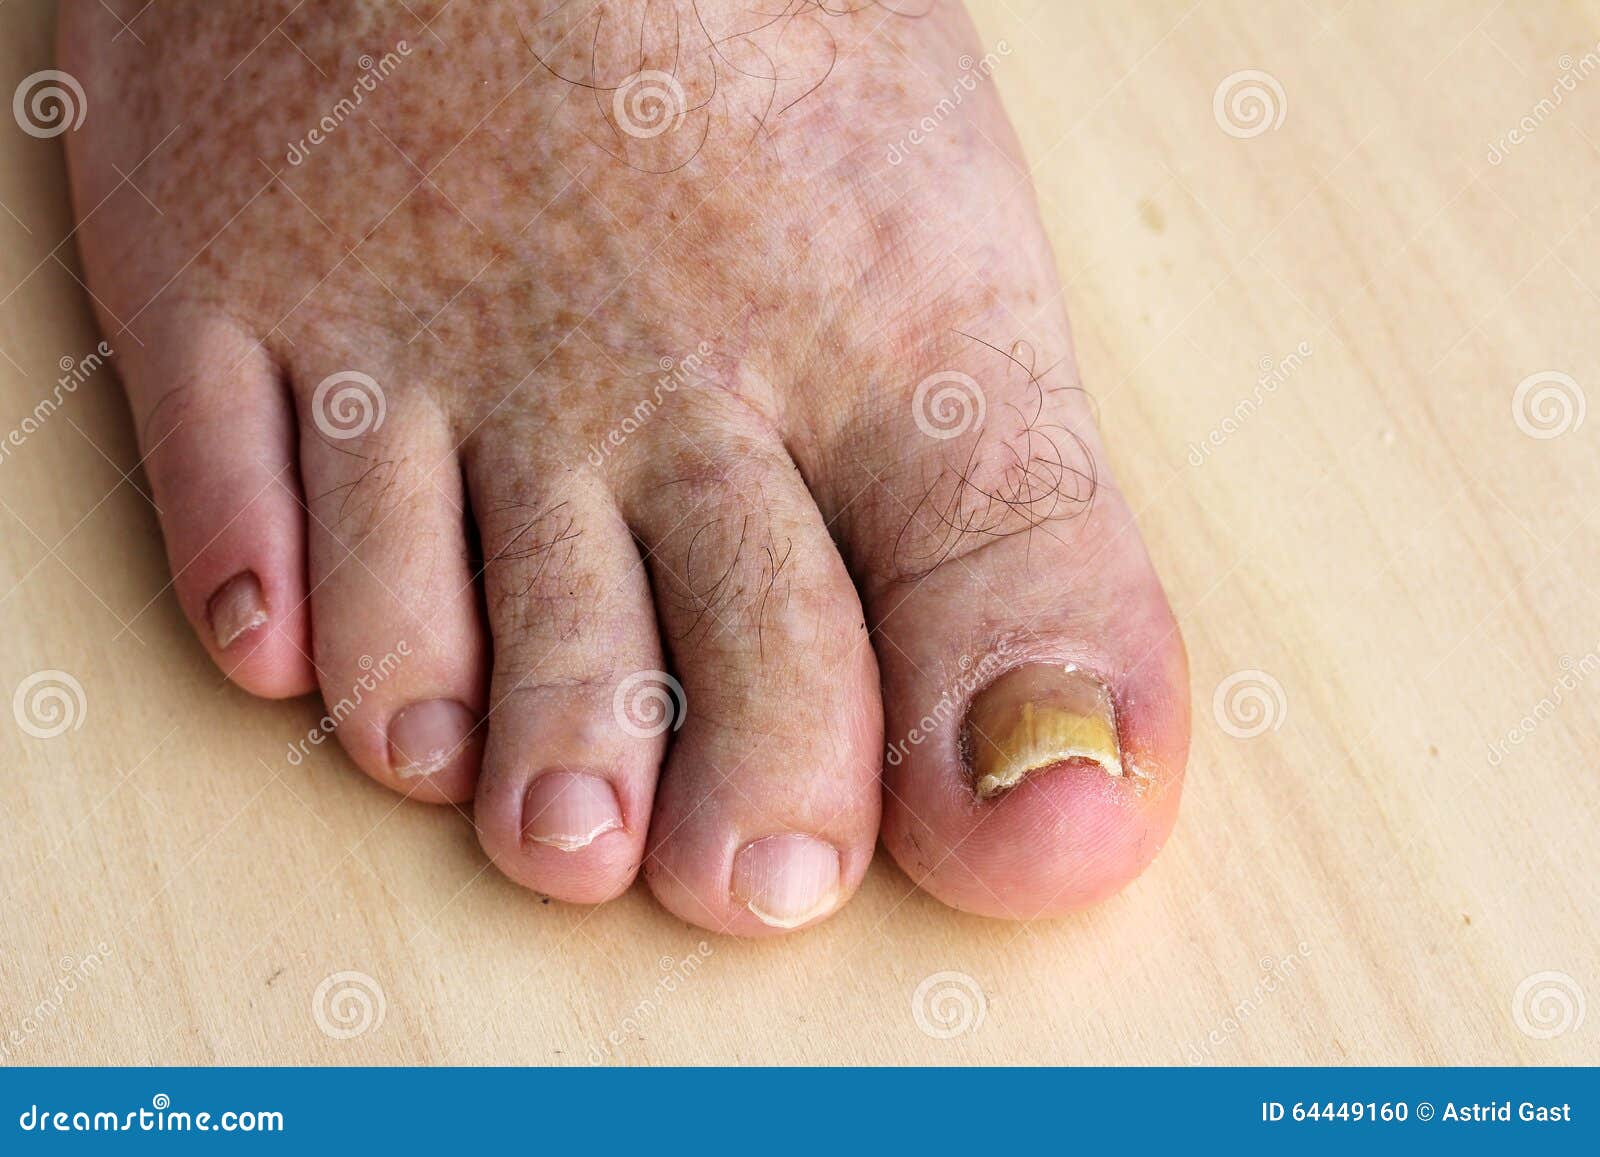 Ásóka, a körömgomba - Egészségtér | Fingernail fungus, Fungal nail infection, Toe fungus